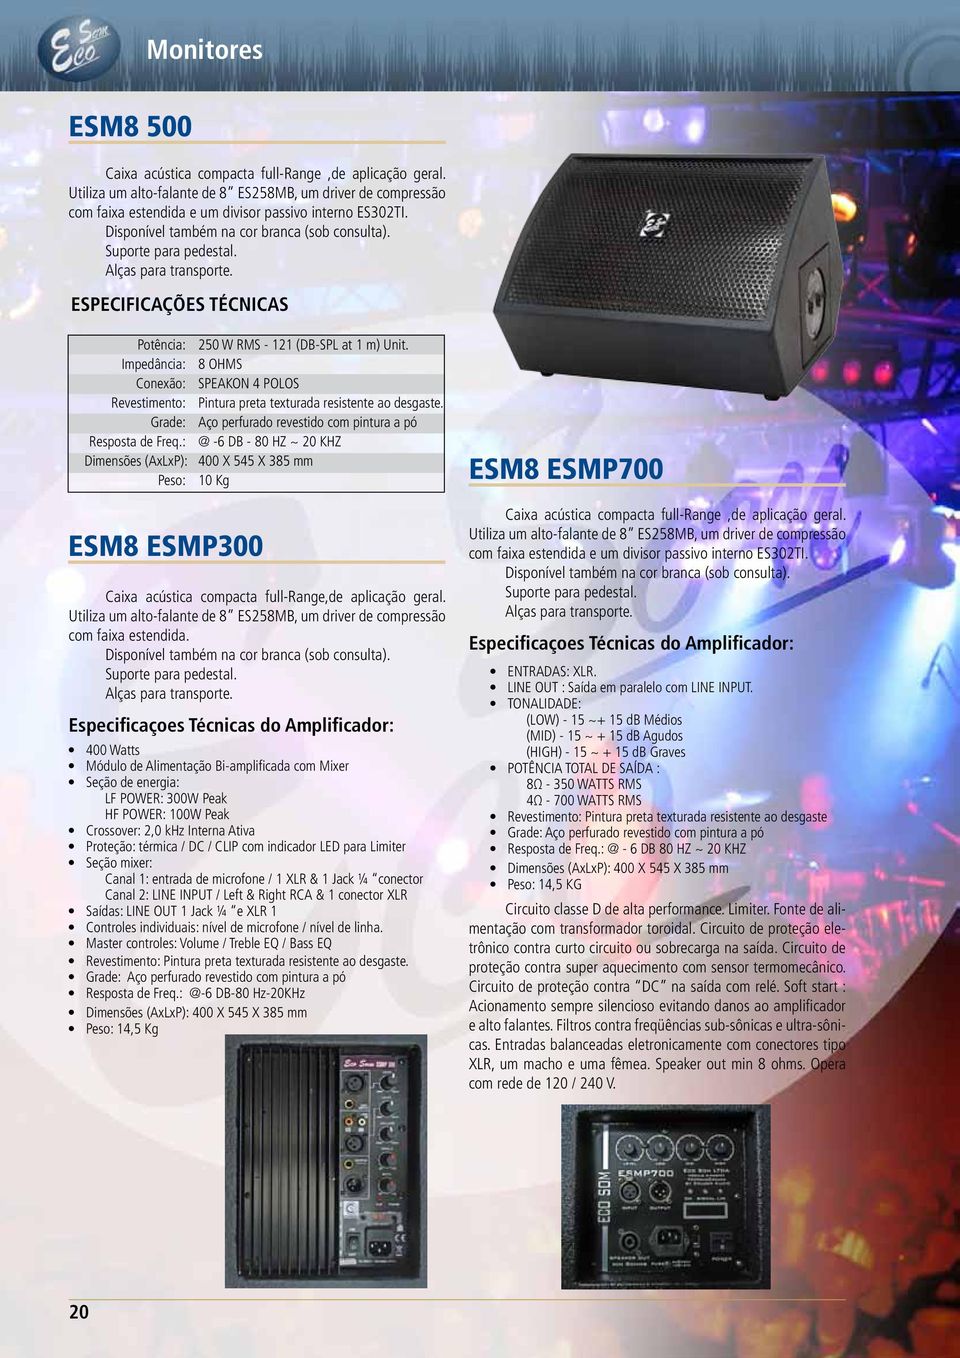 : @ -6 DB - 80 HZ ~ 20 KHZ Dimensões (AxLxP): 400 X 545 X 385 mm Peso: 10 Kg ESM8 ESMP300 Caixa acústica compacta full-range,de aplicação geral.